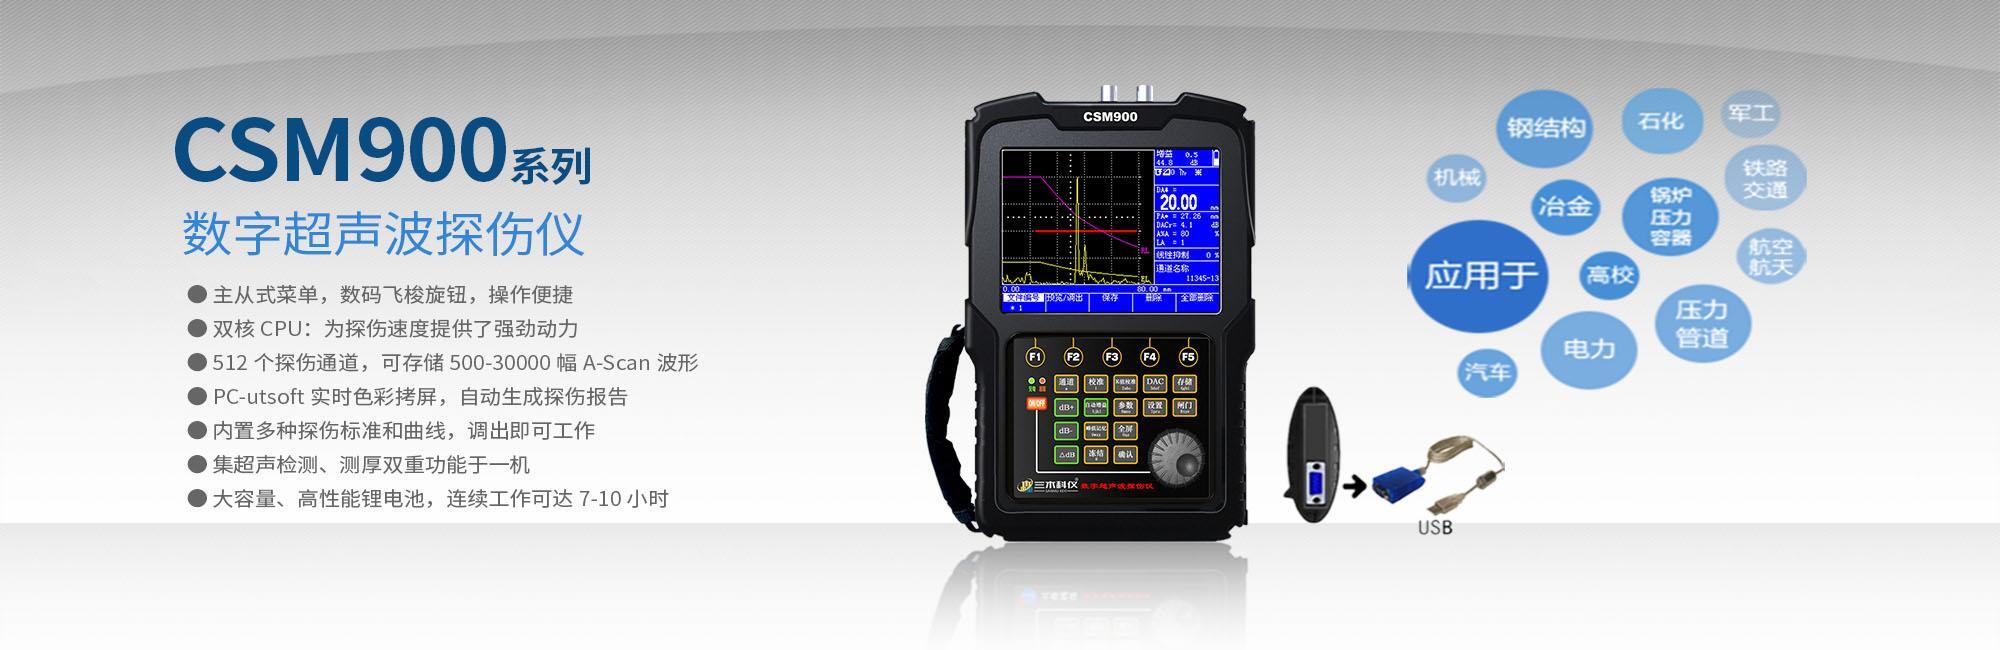 CSM900係列超聲波探傷儀.jpg